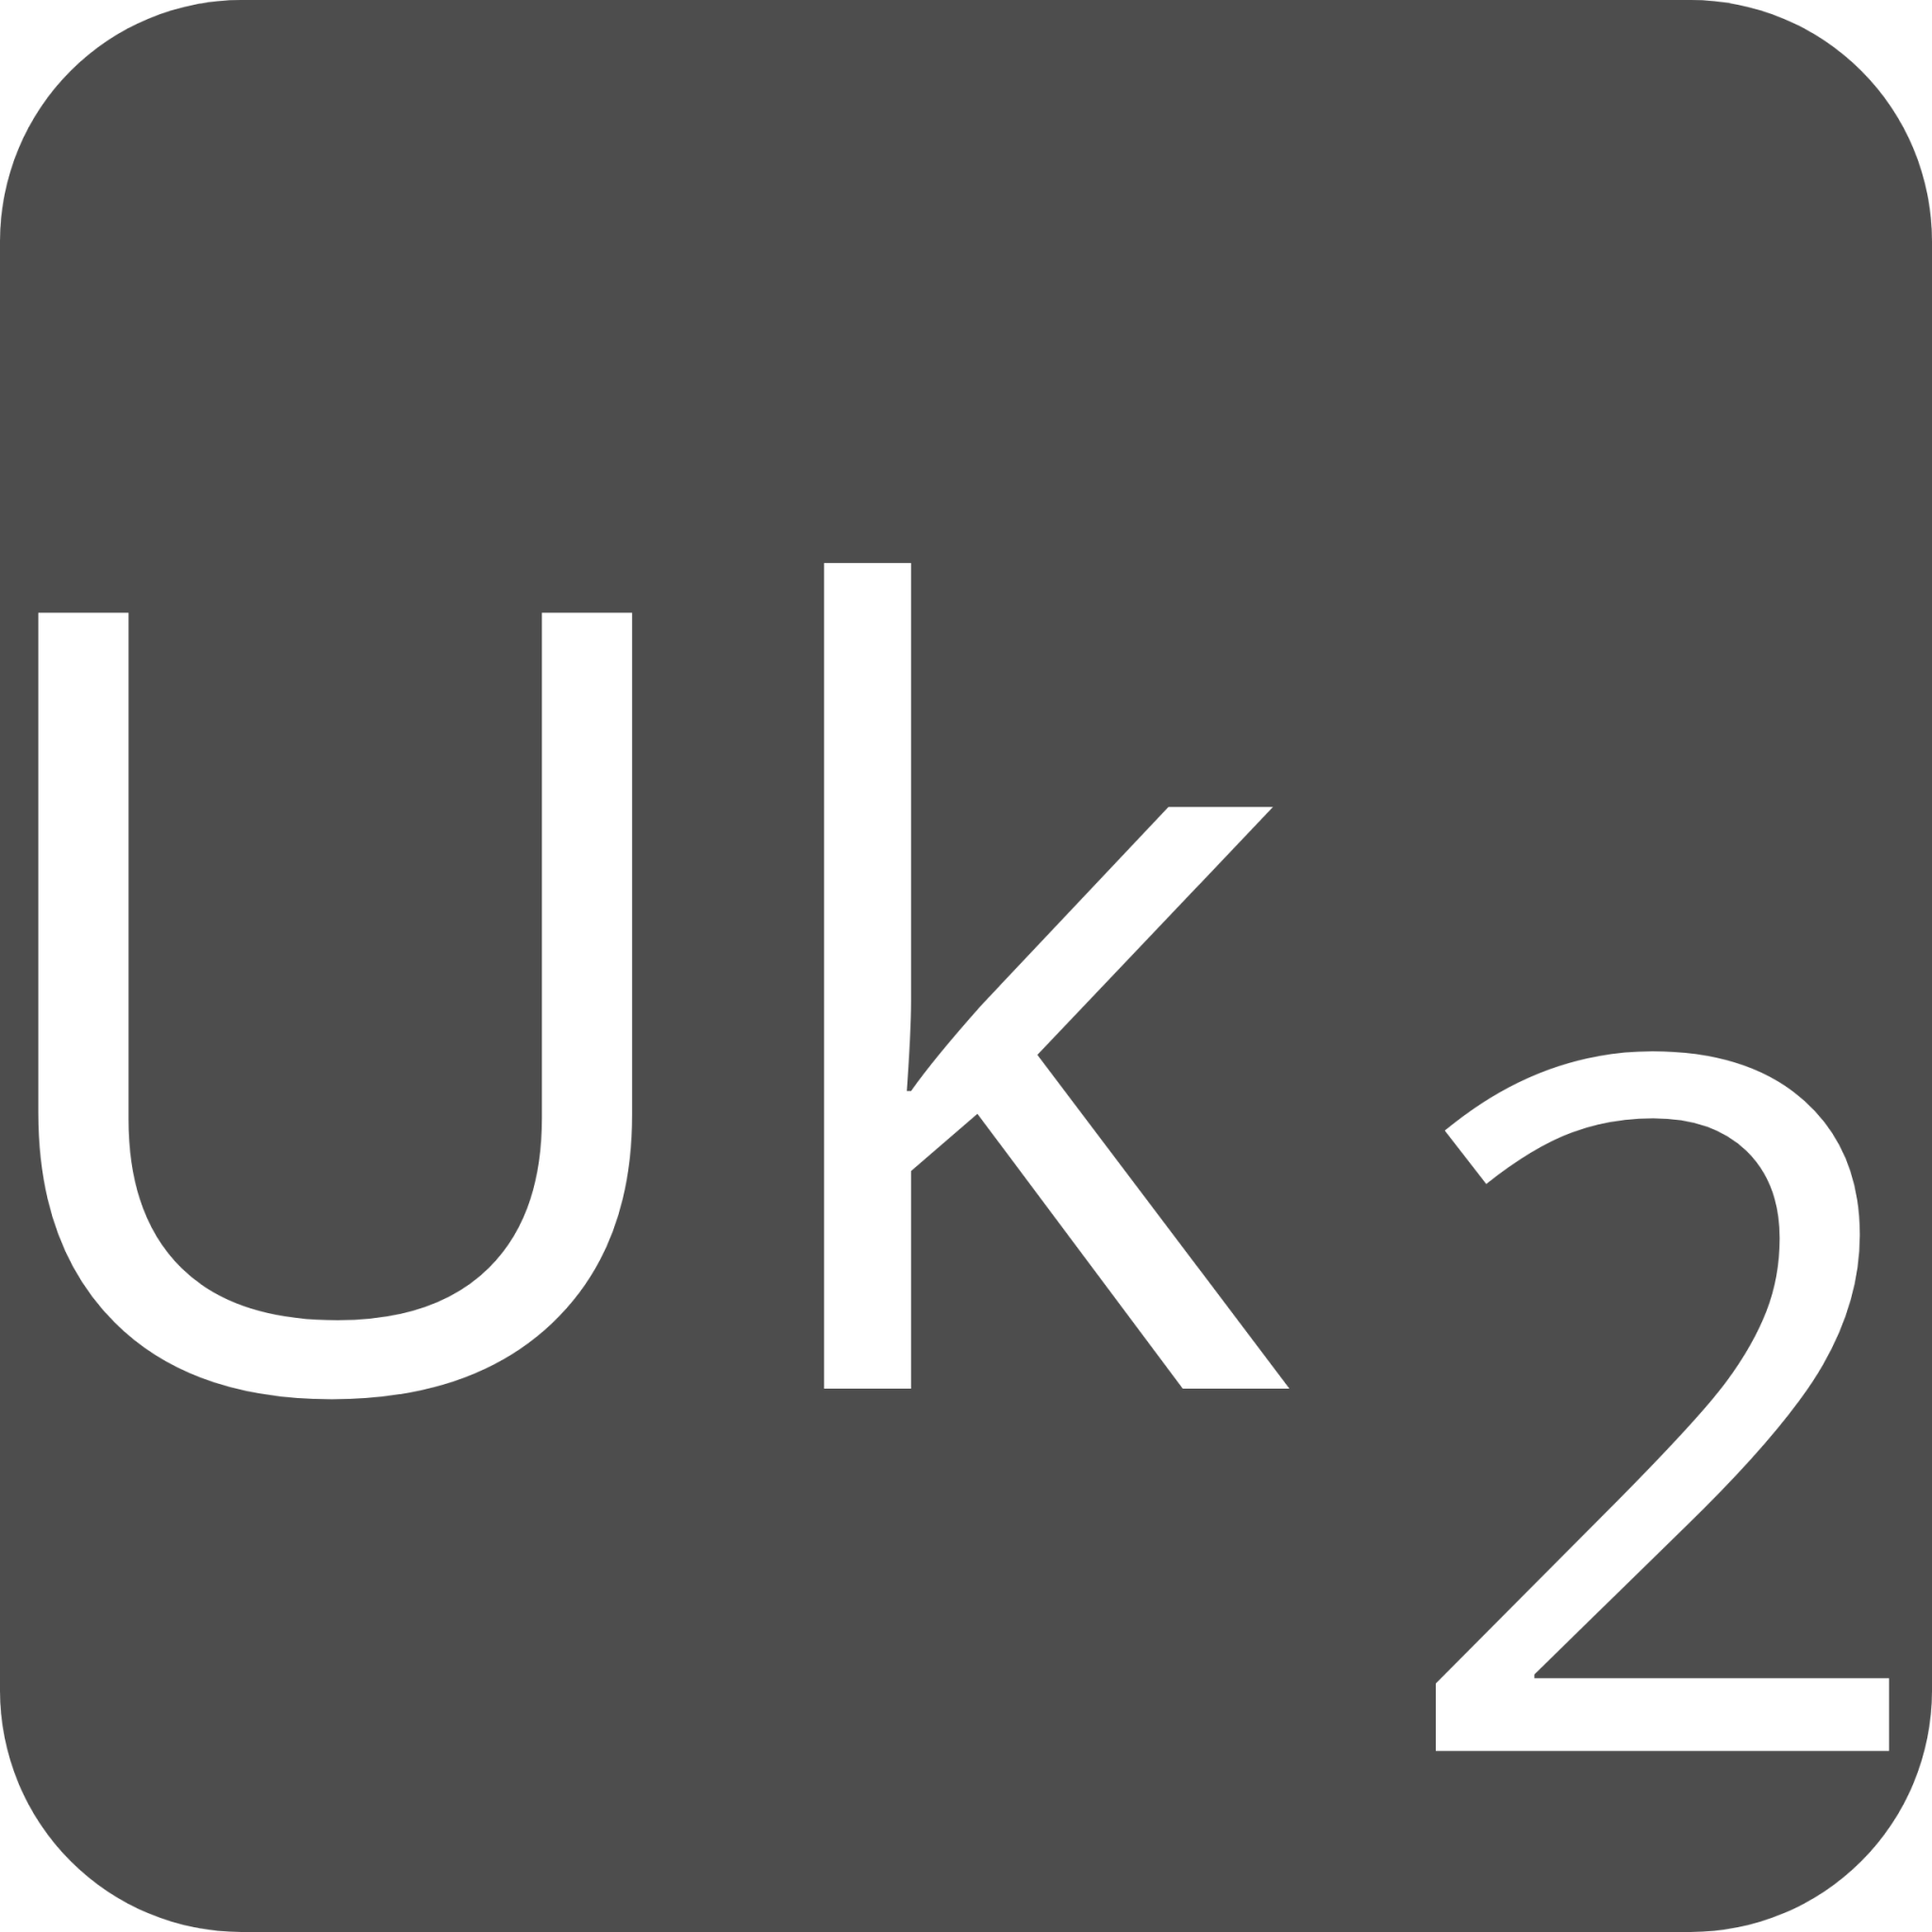 indicator keyboard Uk 2 icon